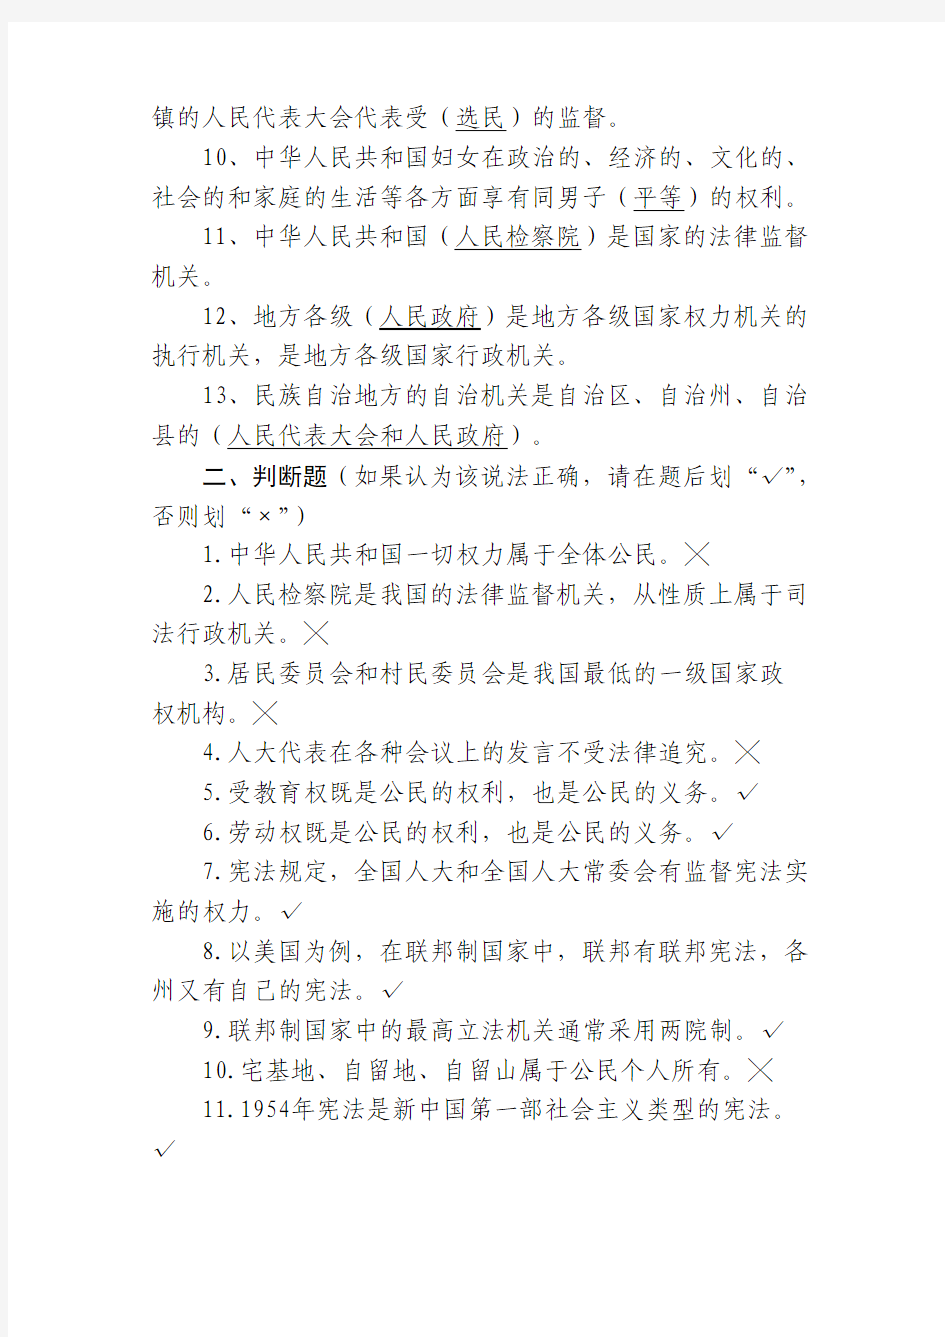 【司法考试】中华人民共和国宪法试题库(共11页)